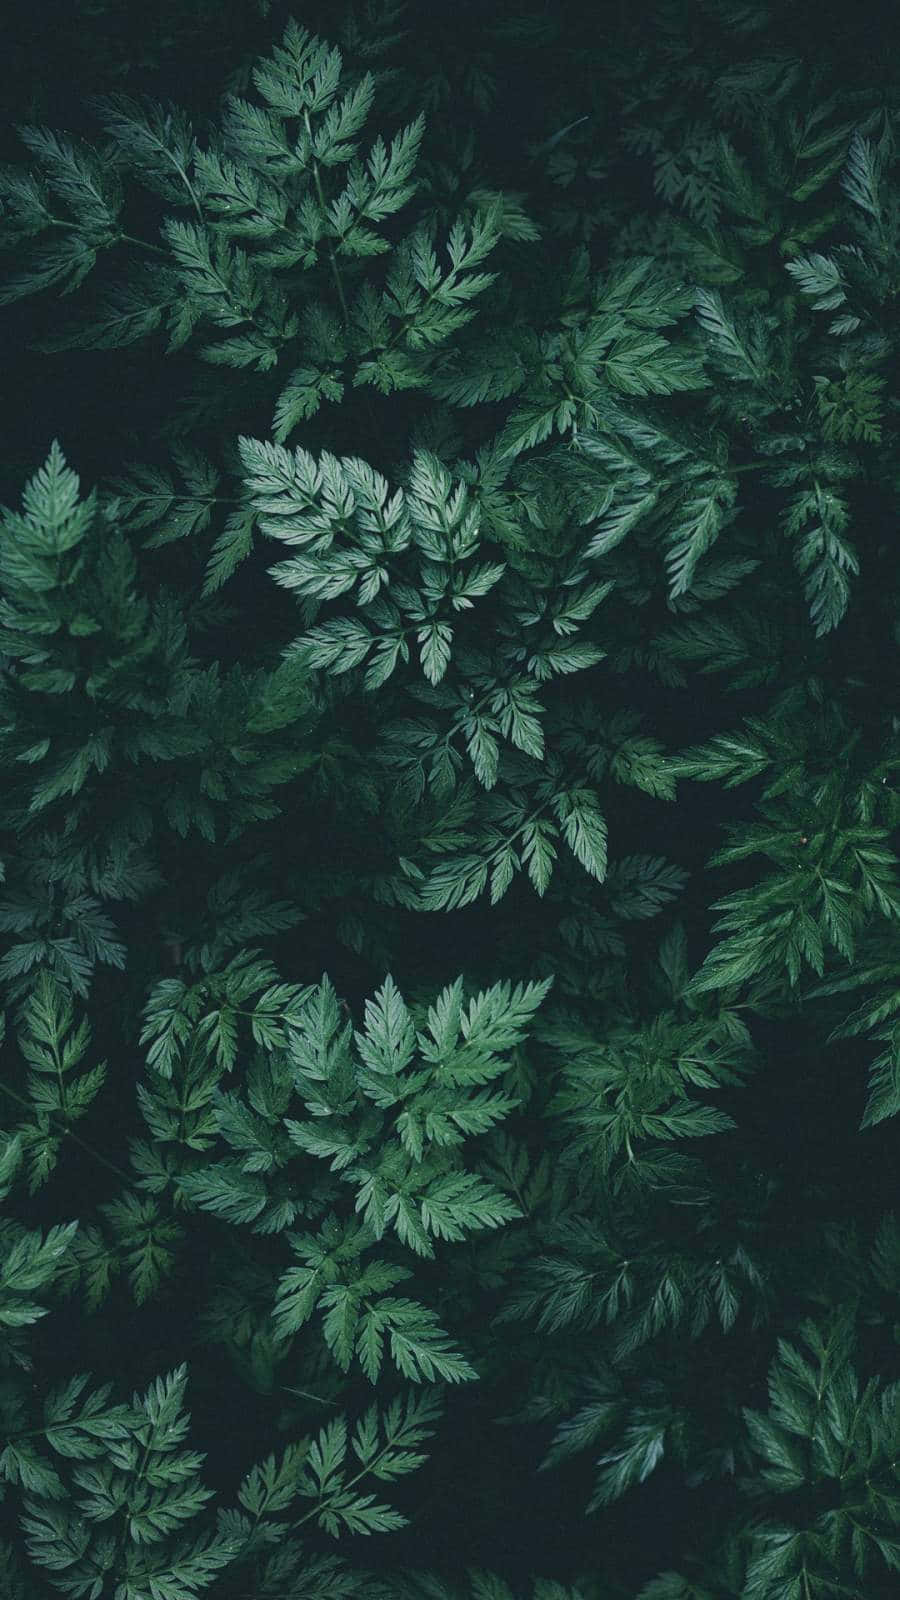 Gönskandeträd Bildar Ett Smaragdgrönt Tak I Nature Green